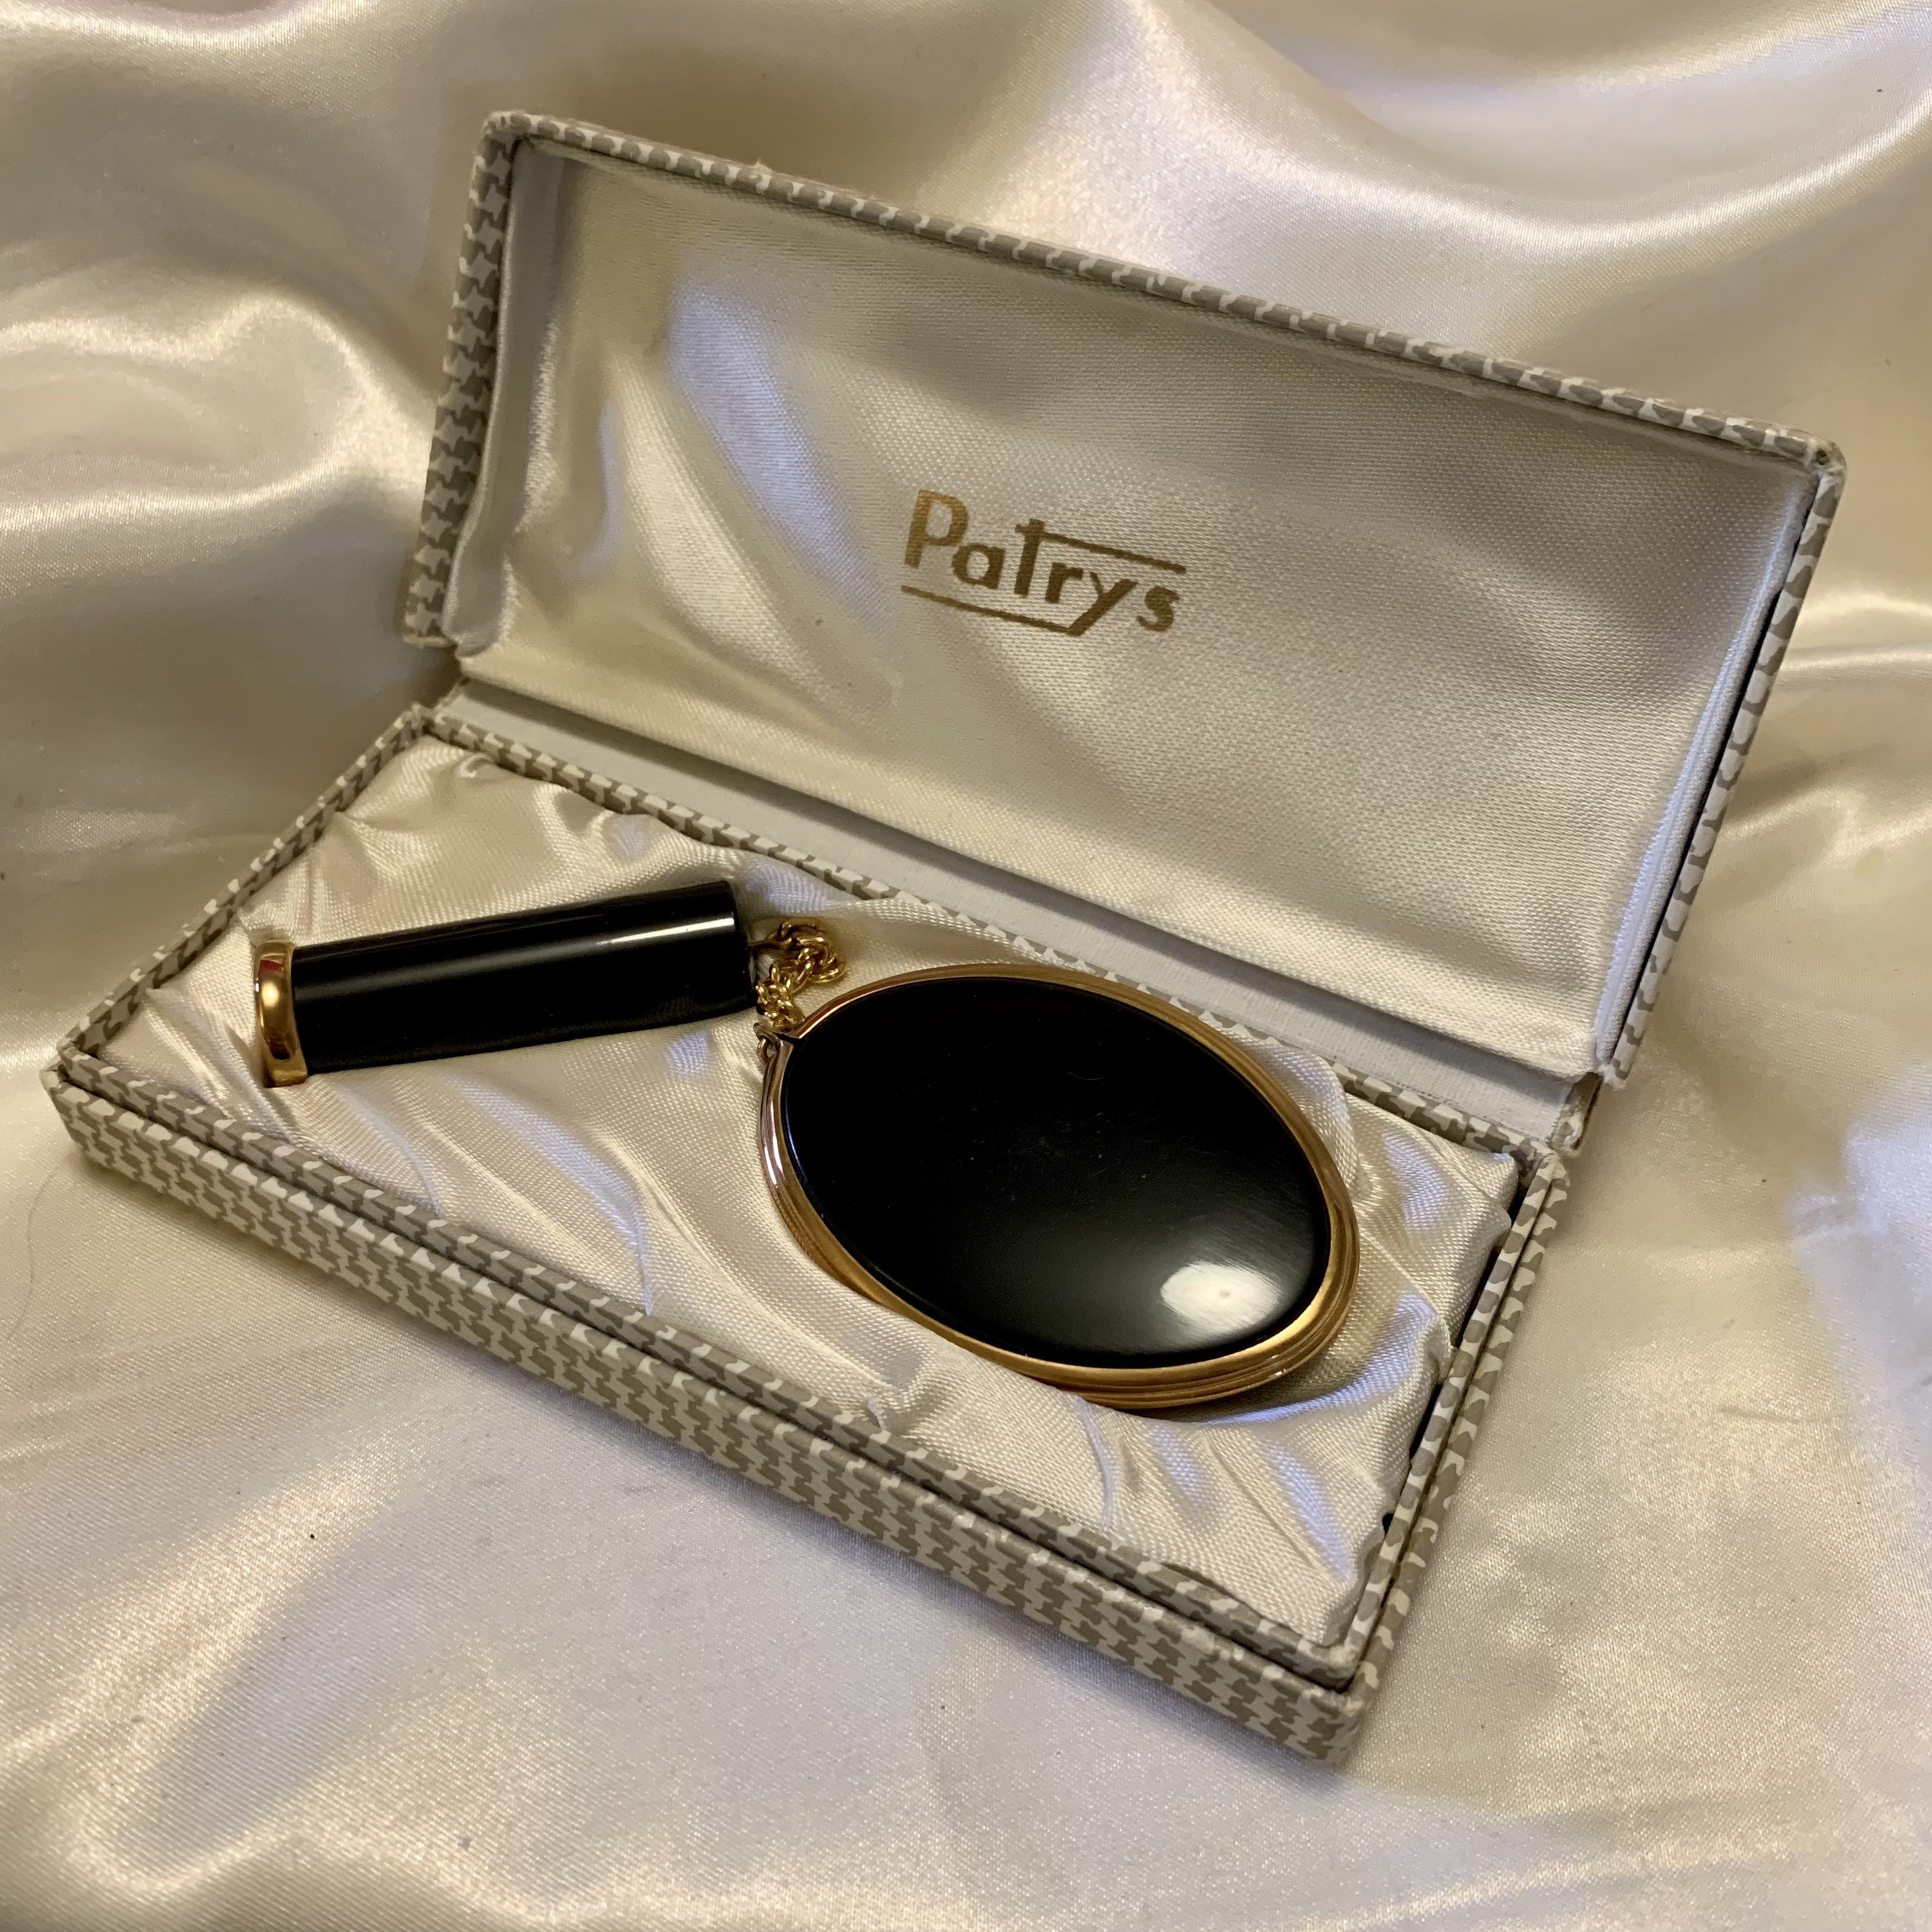 Argento SC Lotus Compact Mirror Lipstick Case Gift Set Enamel